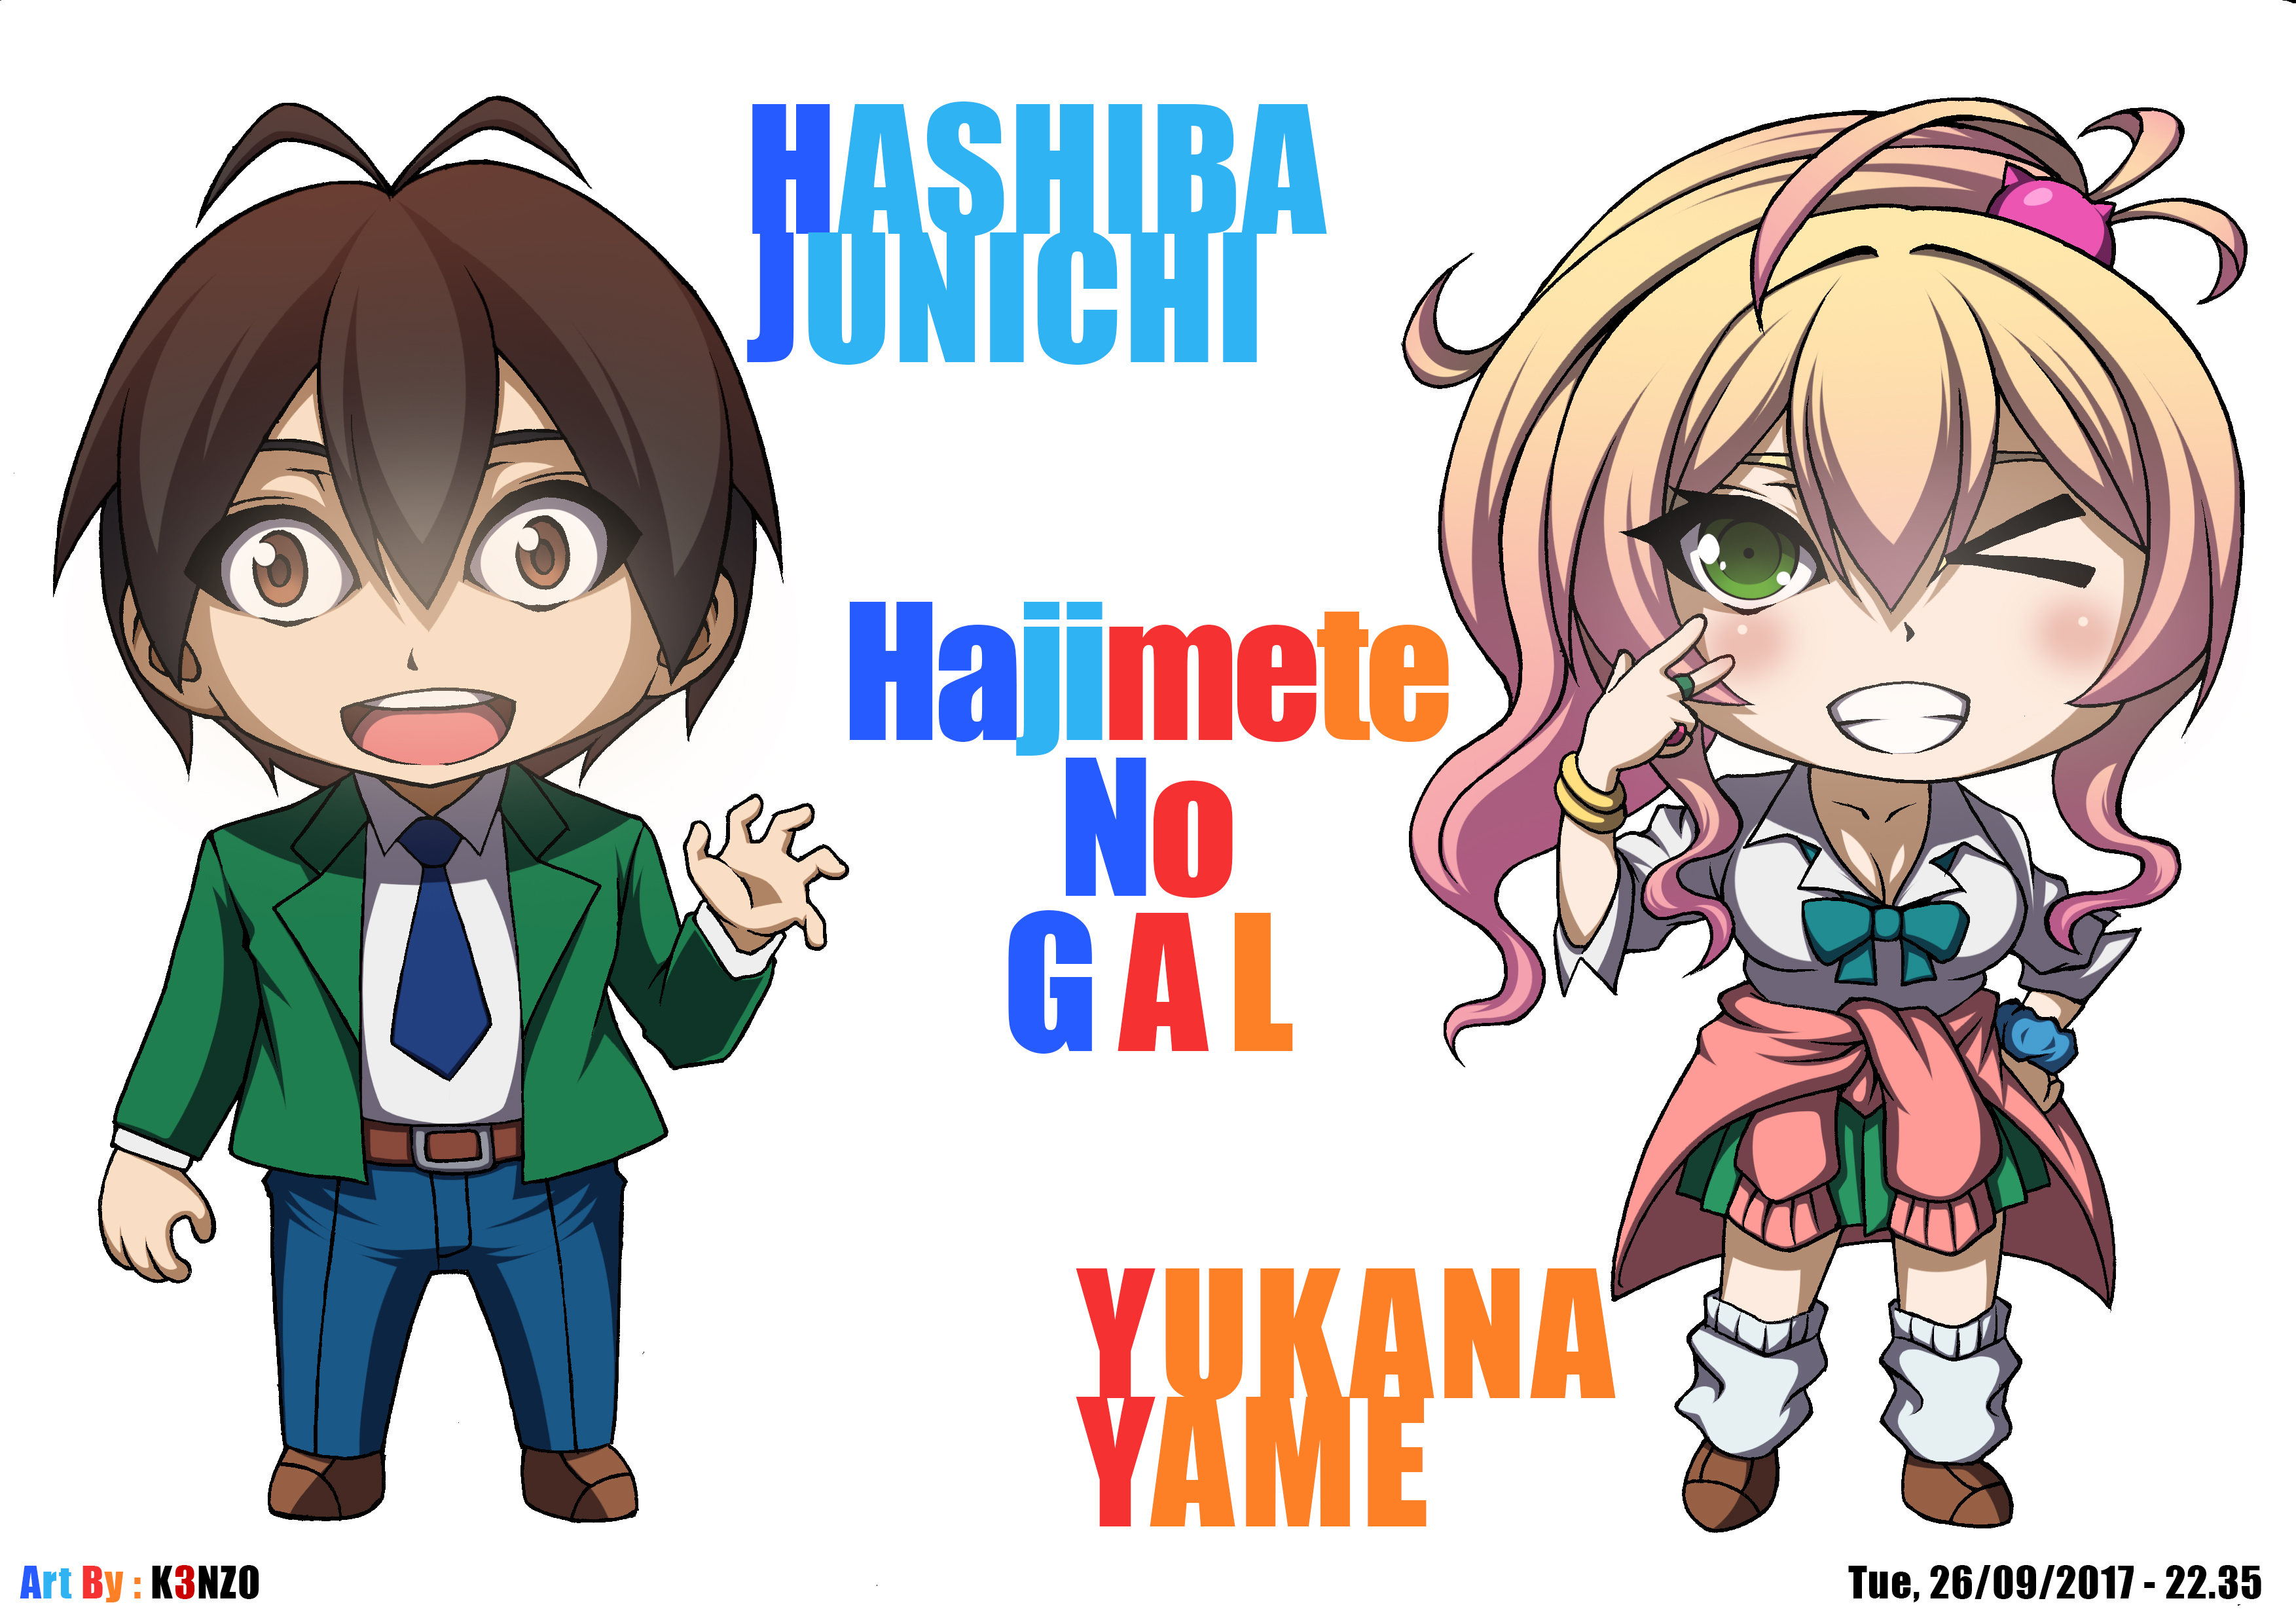 anime, hajimete no gal, junichi hashiba, yukana yame